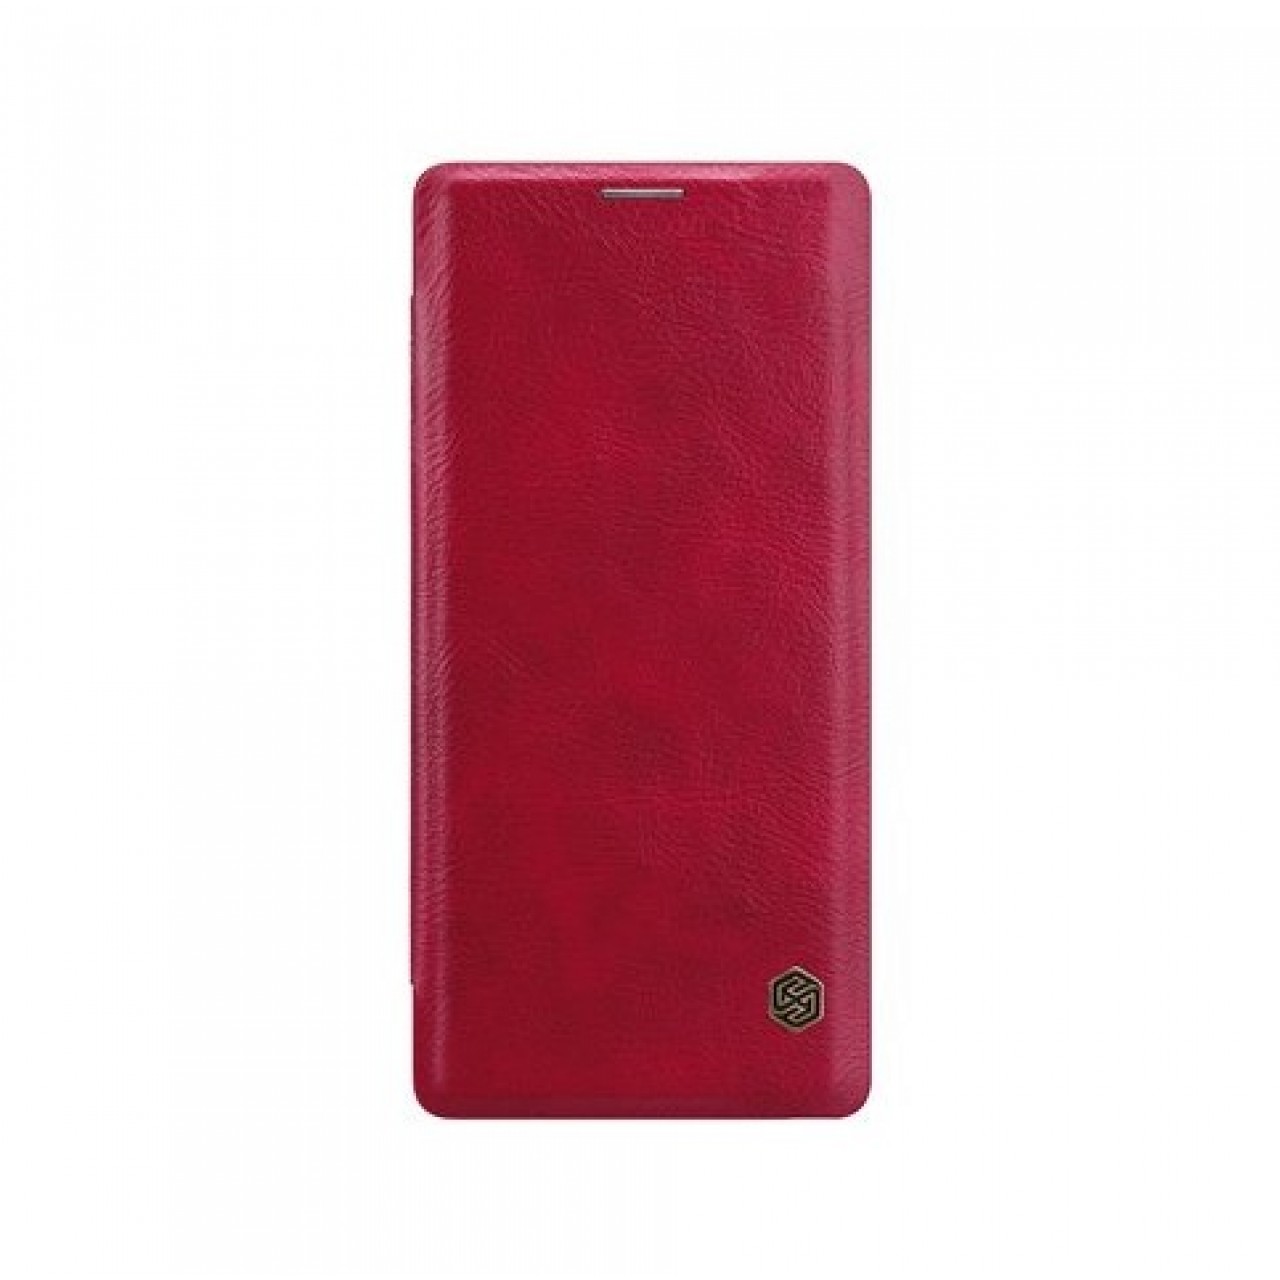 Θήκη Samsung Galaxy Note 9 (N960) Nillkin Qin original leather Πορτοφόλι - 4350 - Κόκκινο